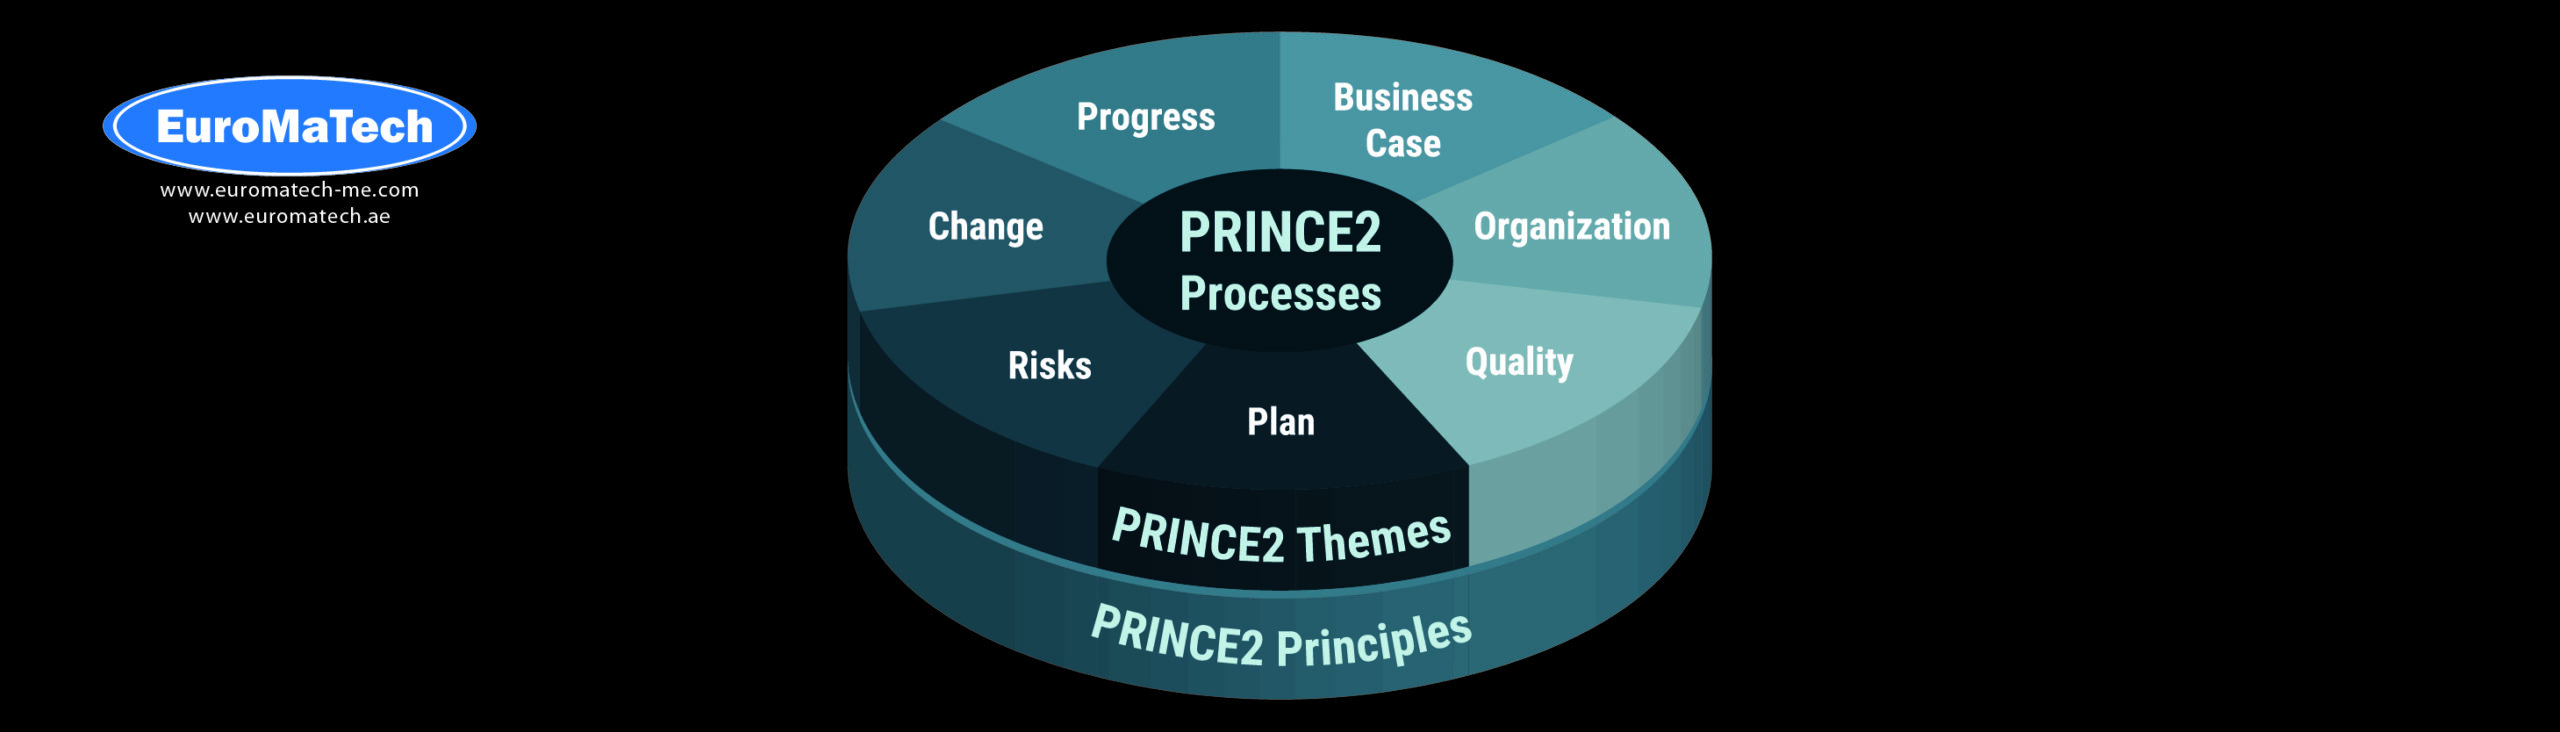 إتقان إدارة المشاريع باستخدام منهجية PRINCE2®